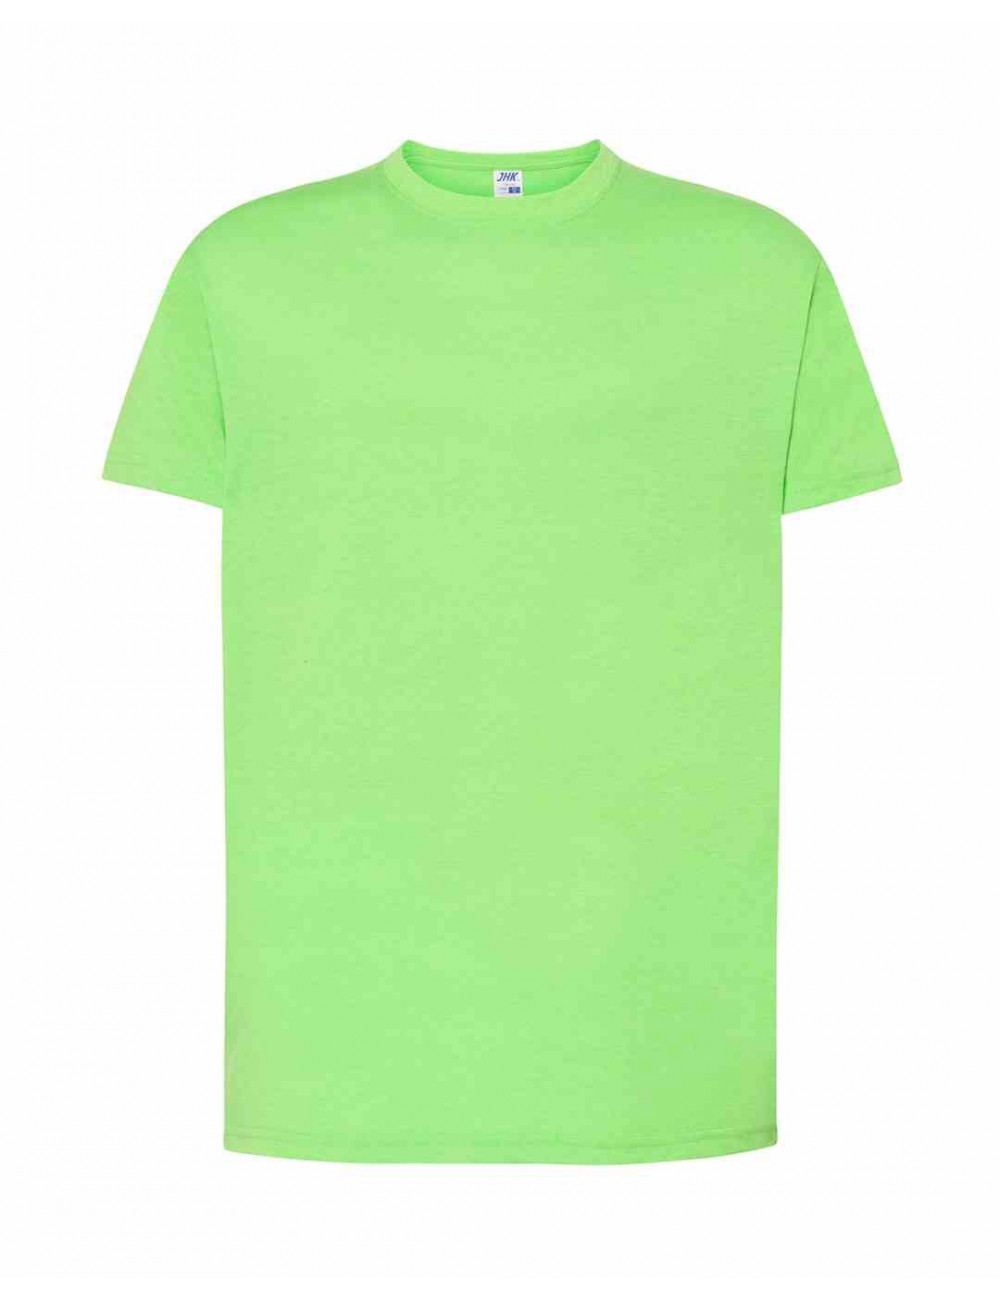 Koszulka męska tsra 150 regular t-shirt lmf - lime fluor Jhk